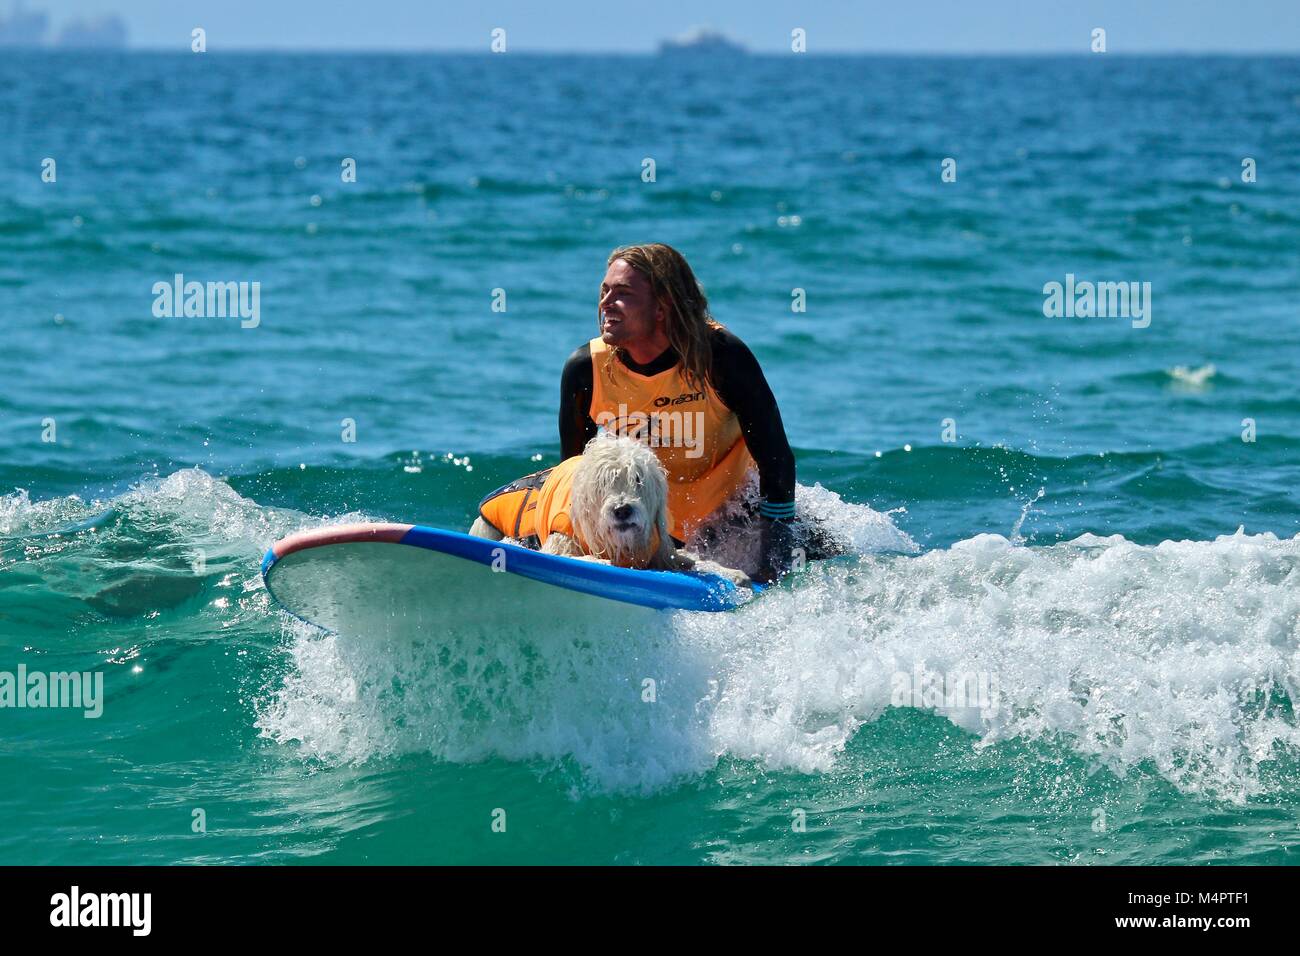 Surf City Surf Concours de chien Banque D'Images